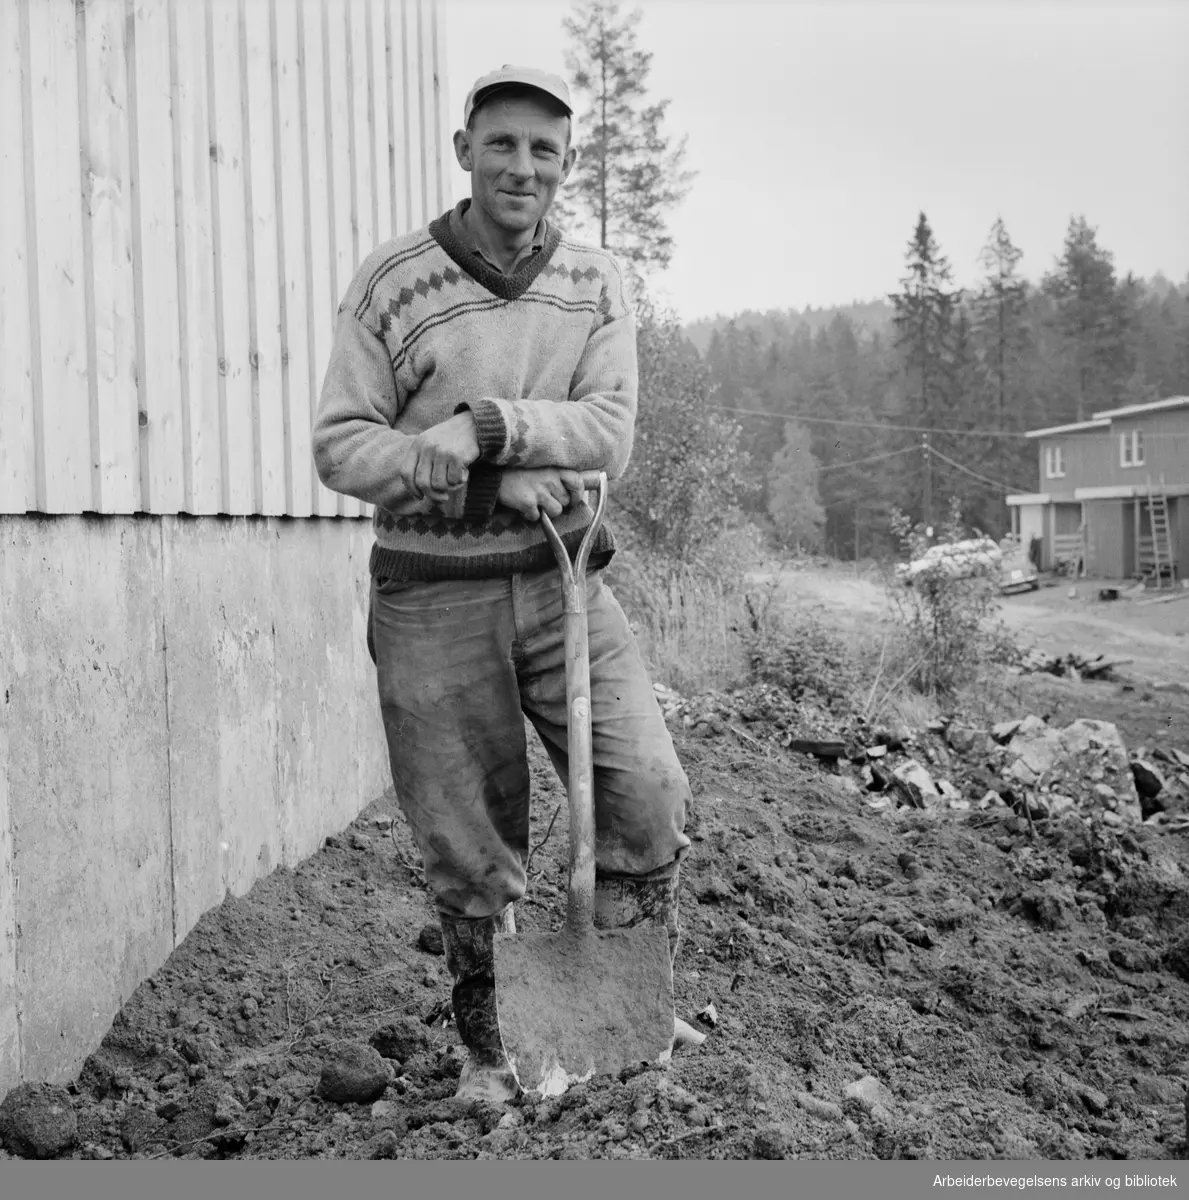 Bygningsarbeider Nils Marigård fra Søndre Land jobber på et nybygg for OBOS ved Eftasåsen og Unnarennet på Oppsal, september 1964.